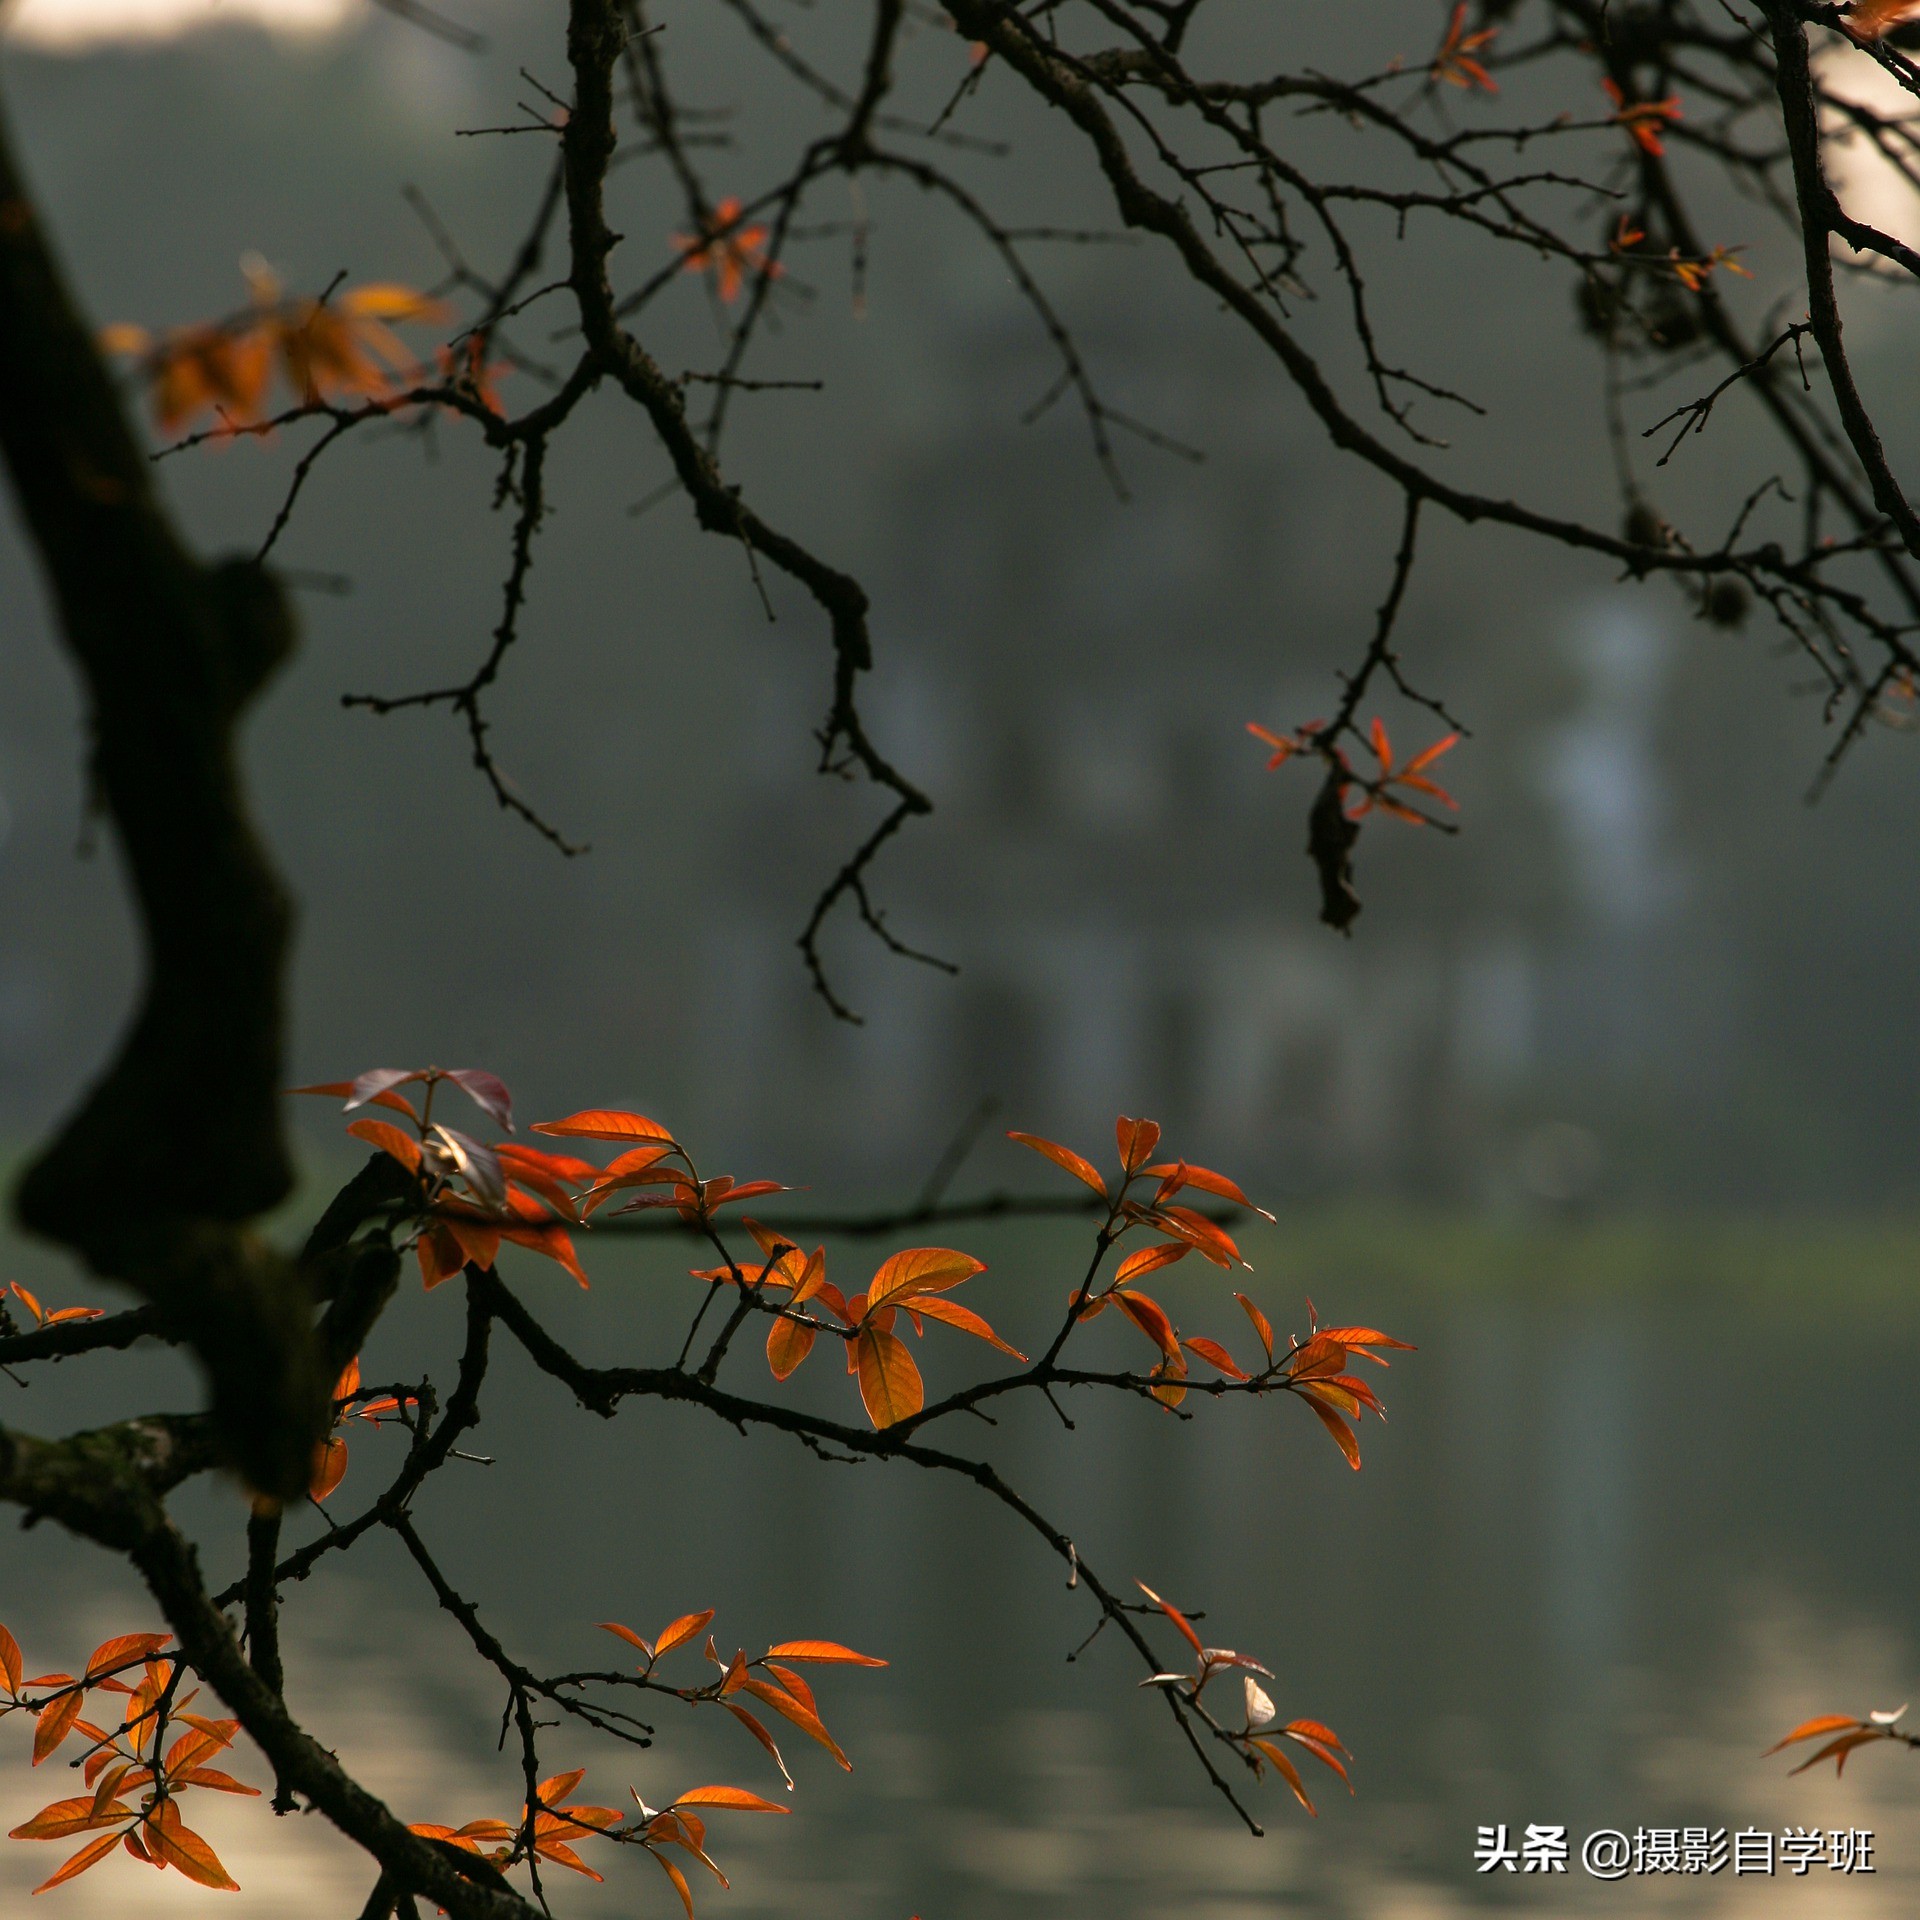 拍美秋天并不难，这6个简单的秋天摄影技巧，帮摄影新手拍美秋天